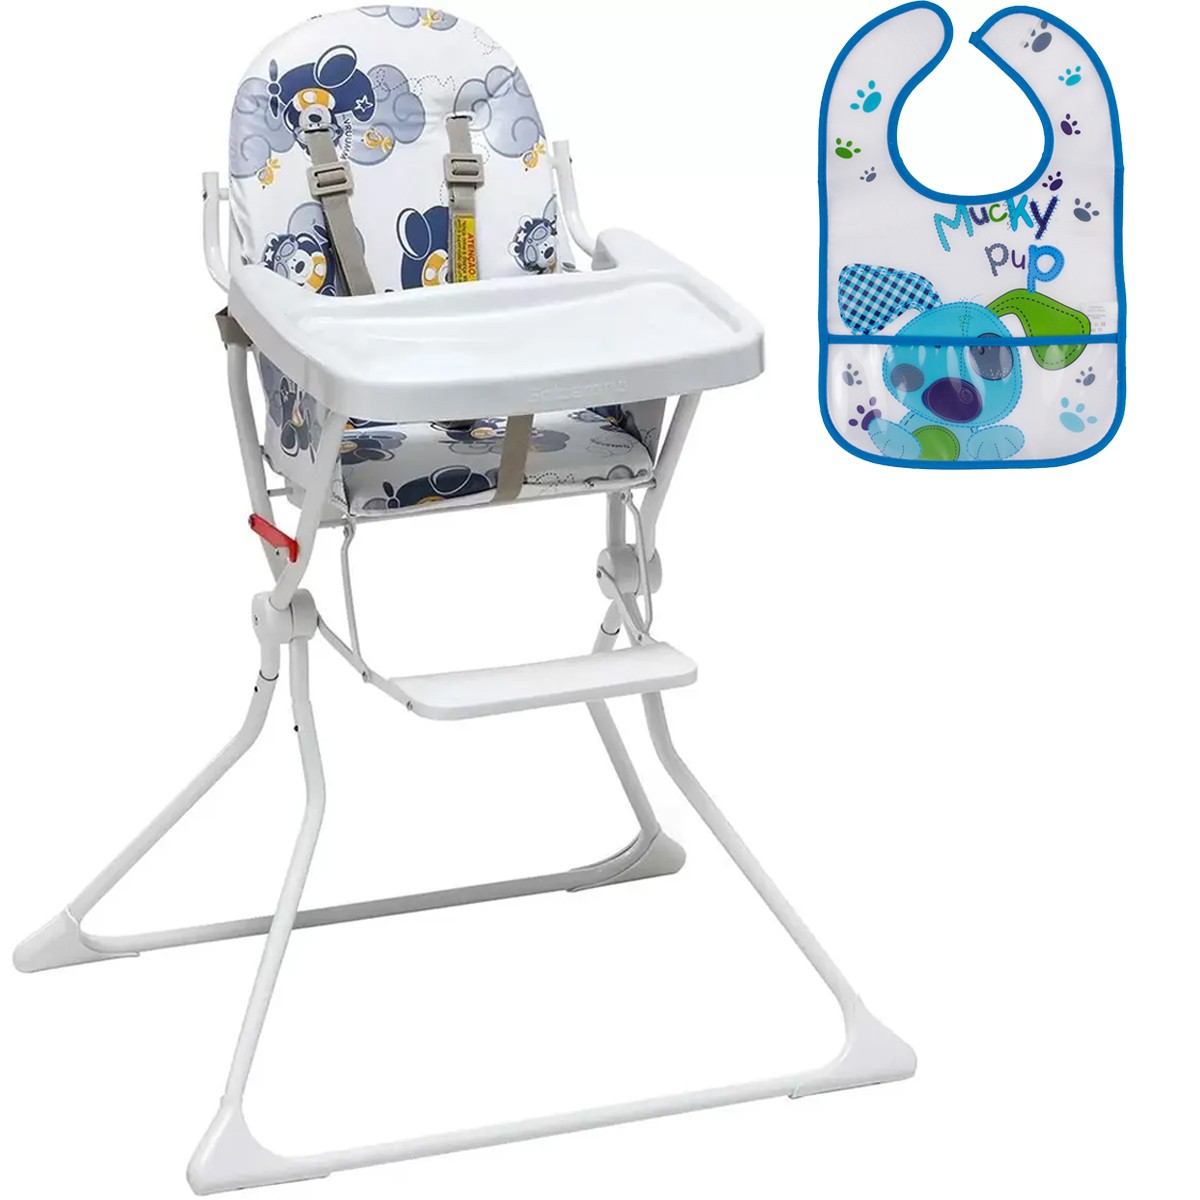 Cadeira Alta De Bebe Para Alimentação Standard II Até 15 Kg Galzerano + Babador Infantil